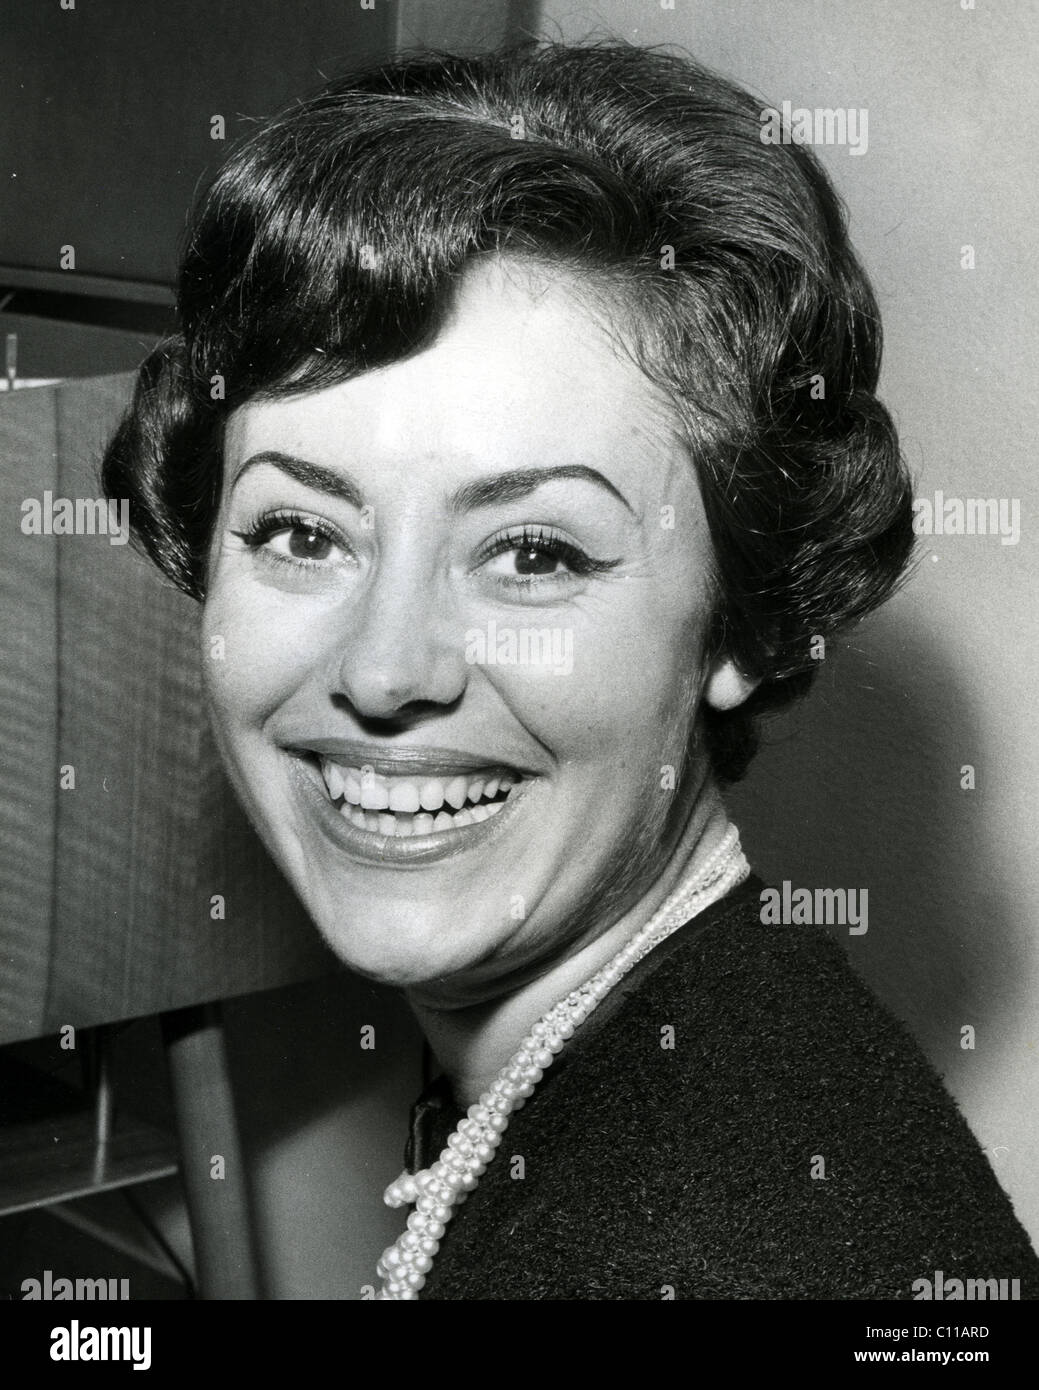 CATARINA VALENTE, chanteuse franco-italienne à propos de 1960 Banque D'Images